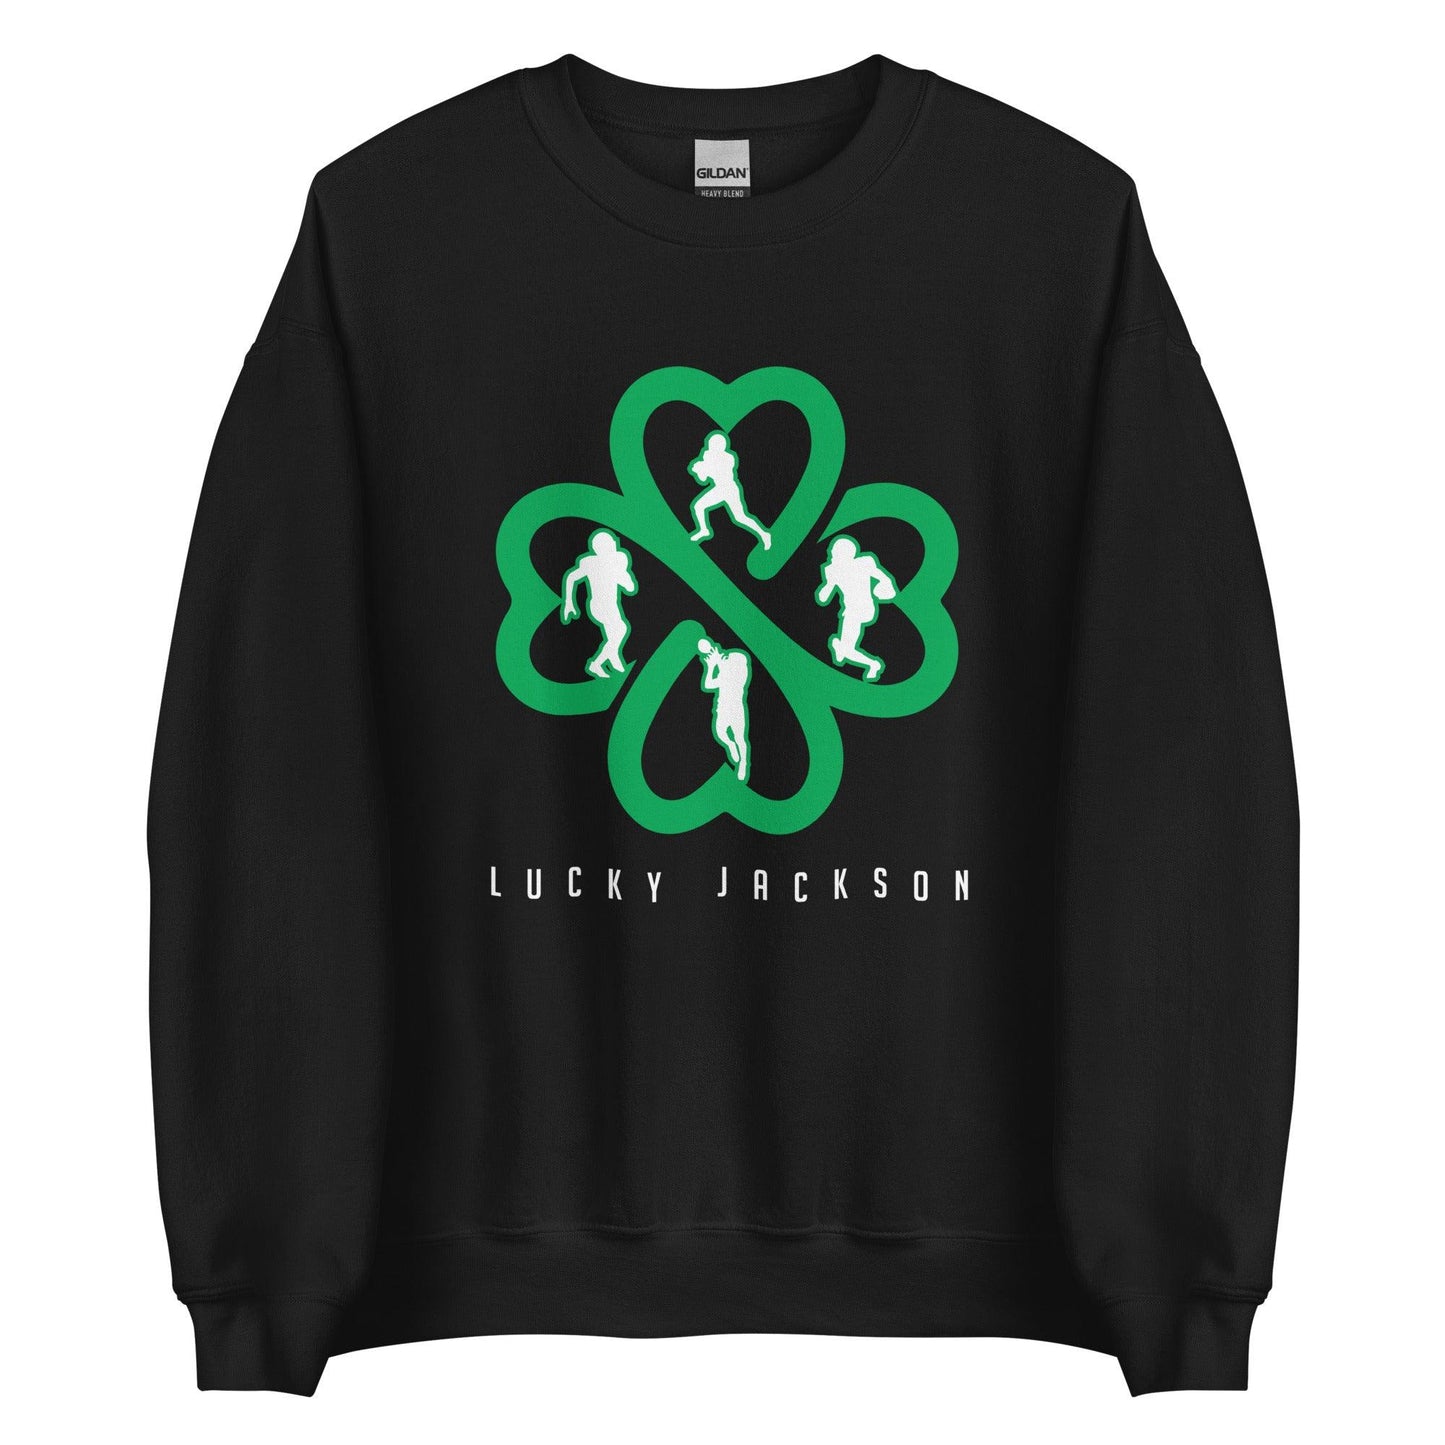 Lucky Jackson "Elite" Sweatshirt - Fan Arch